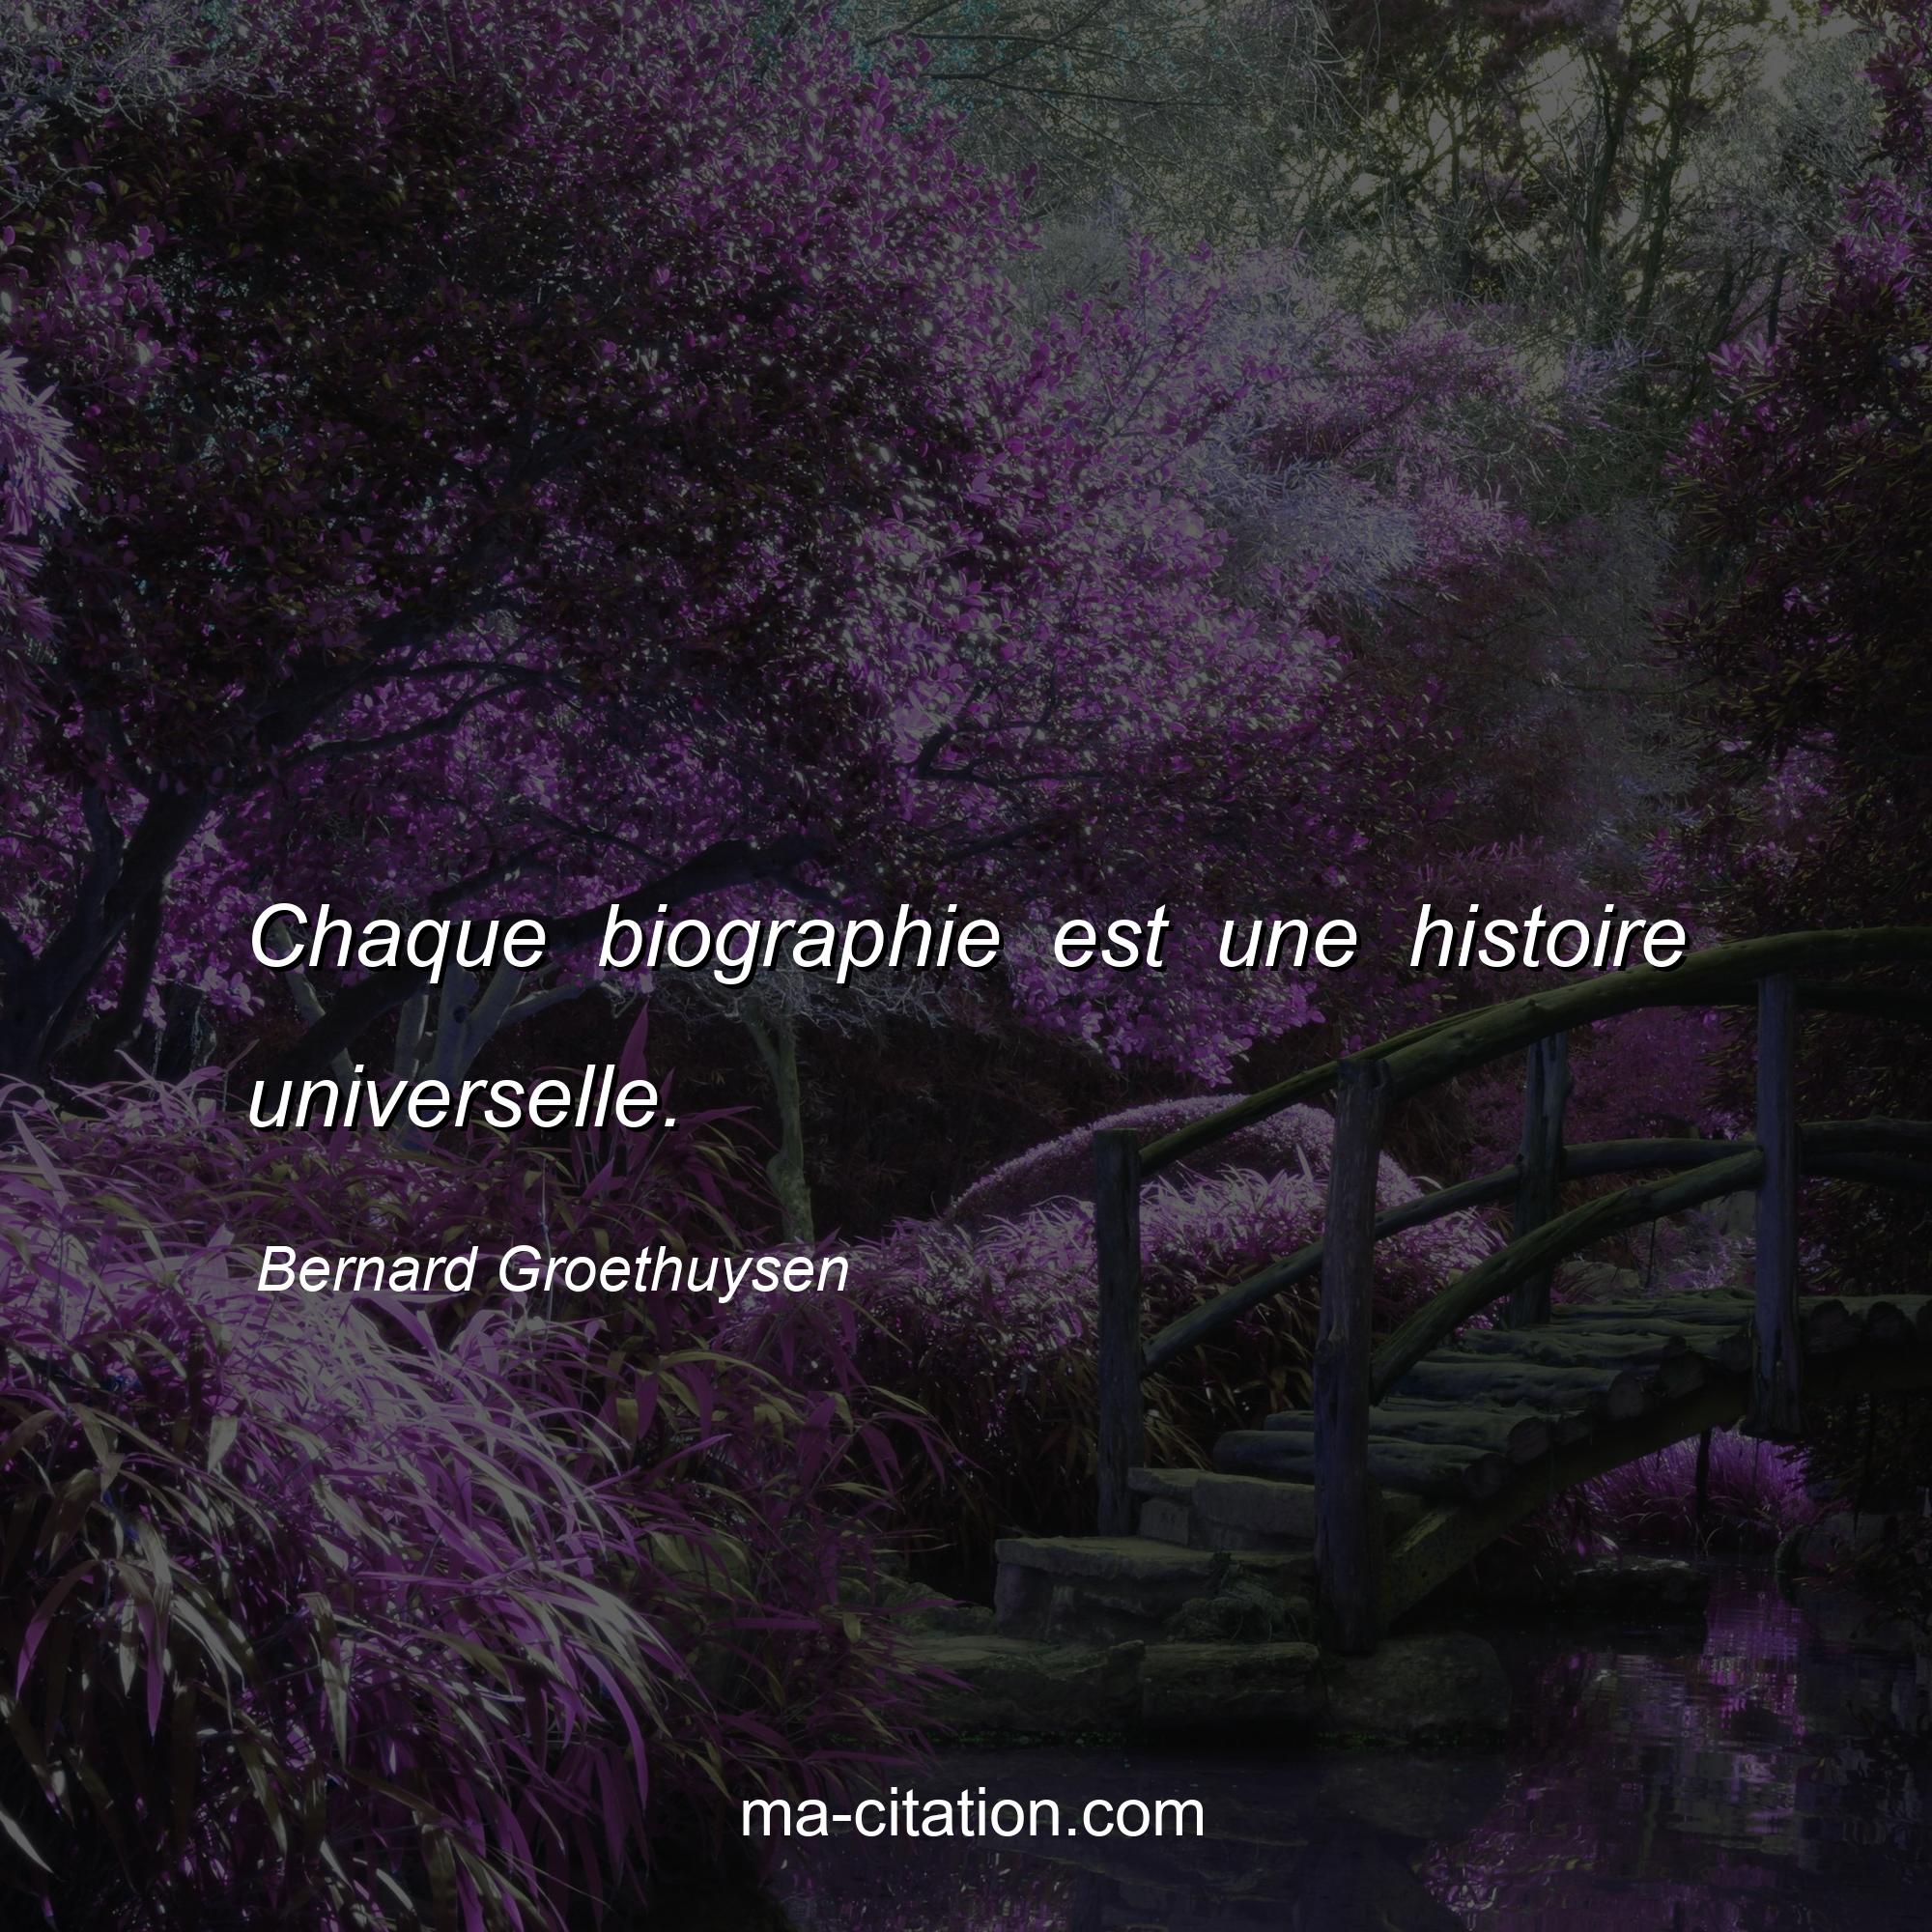 Bernard Groethuysen : Chaque biographie est une histoire universelle.